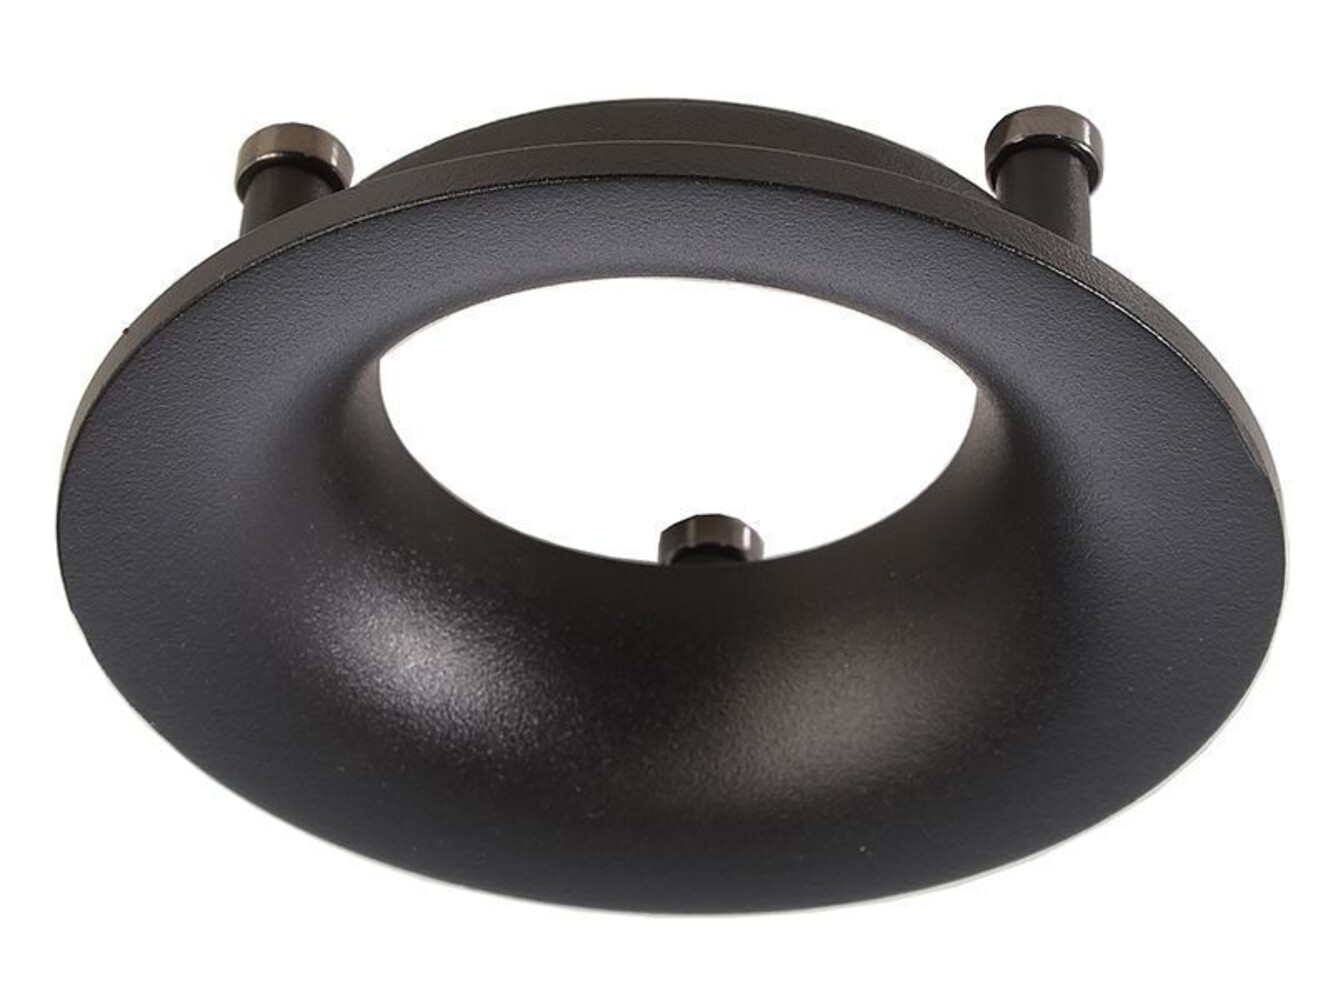 Schwarzer Reflektor-Ring von Deko-Light als Zubehör, in hoher Qualität und mit einer Höhe von 26 mm